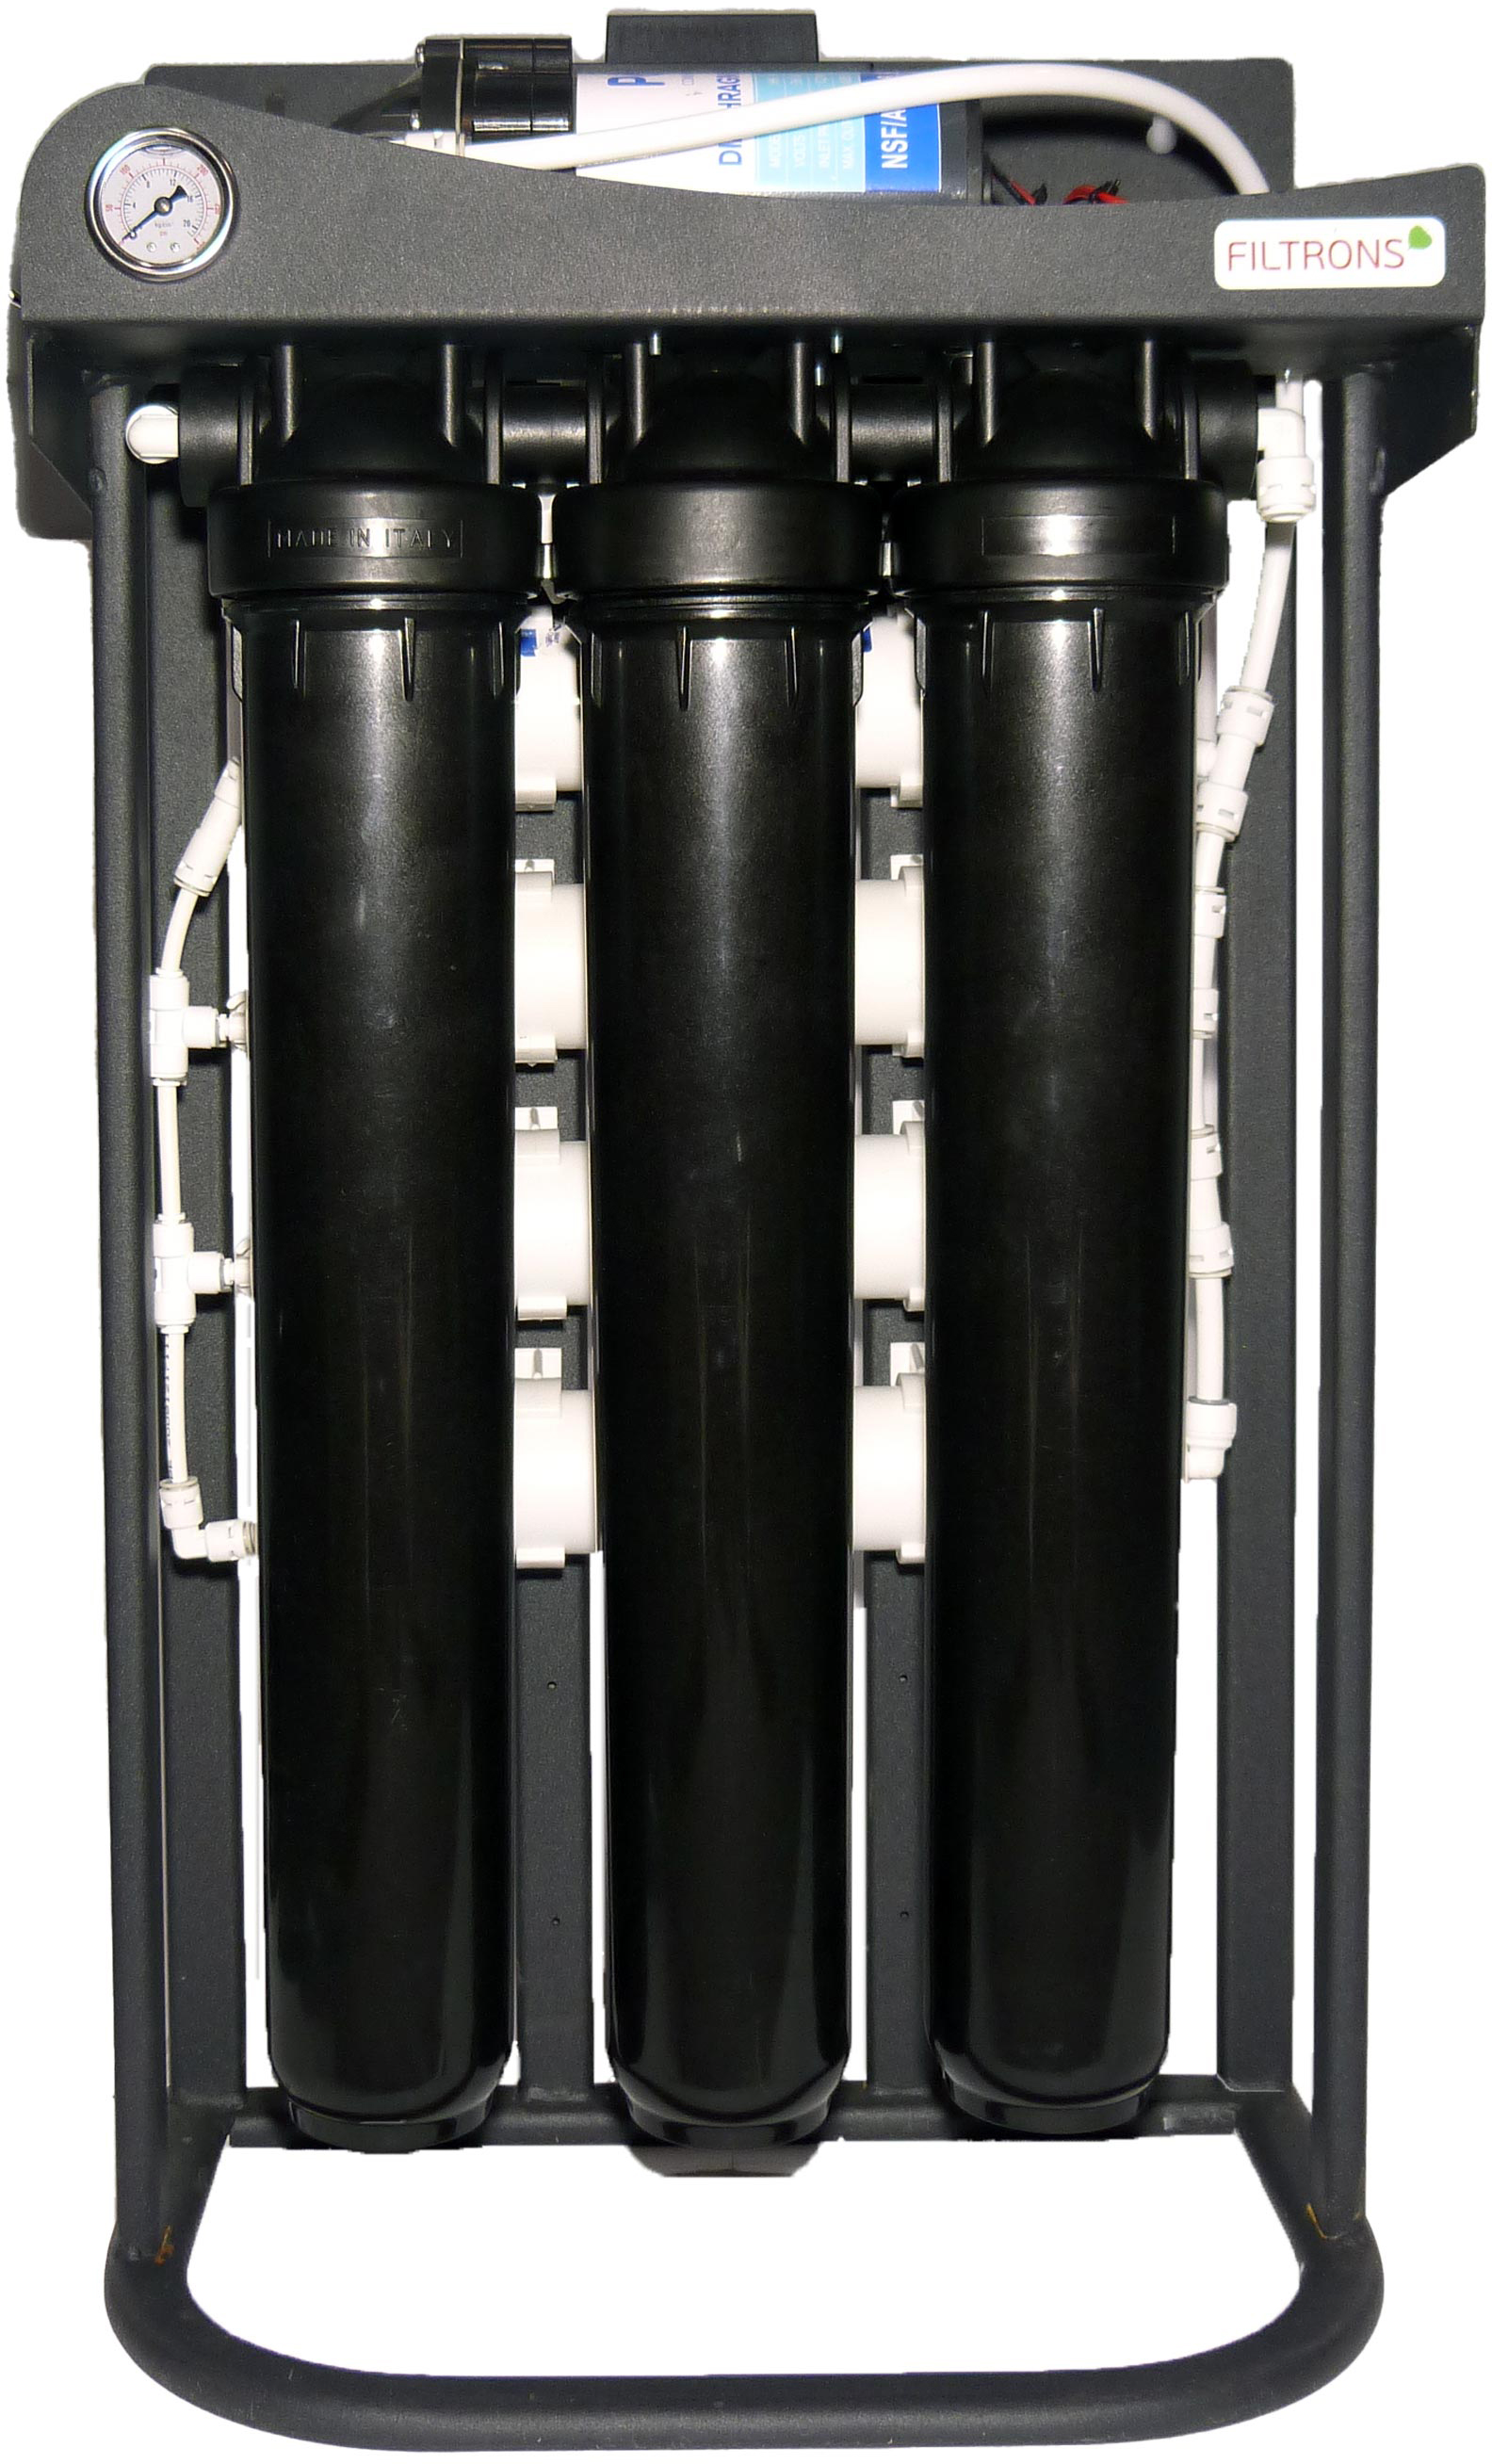 Фильтр Filtrons для воды Filtrons RO600 (FLSRO600)